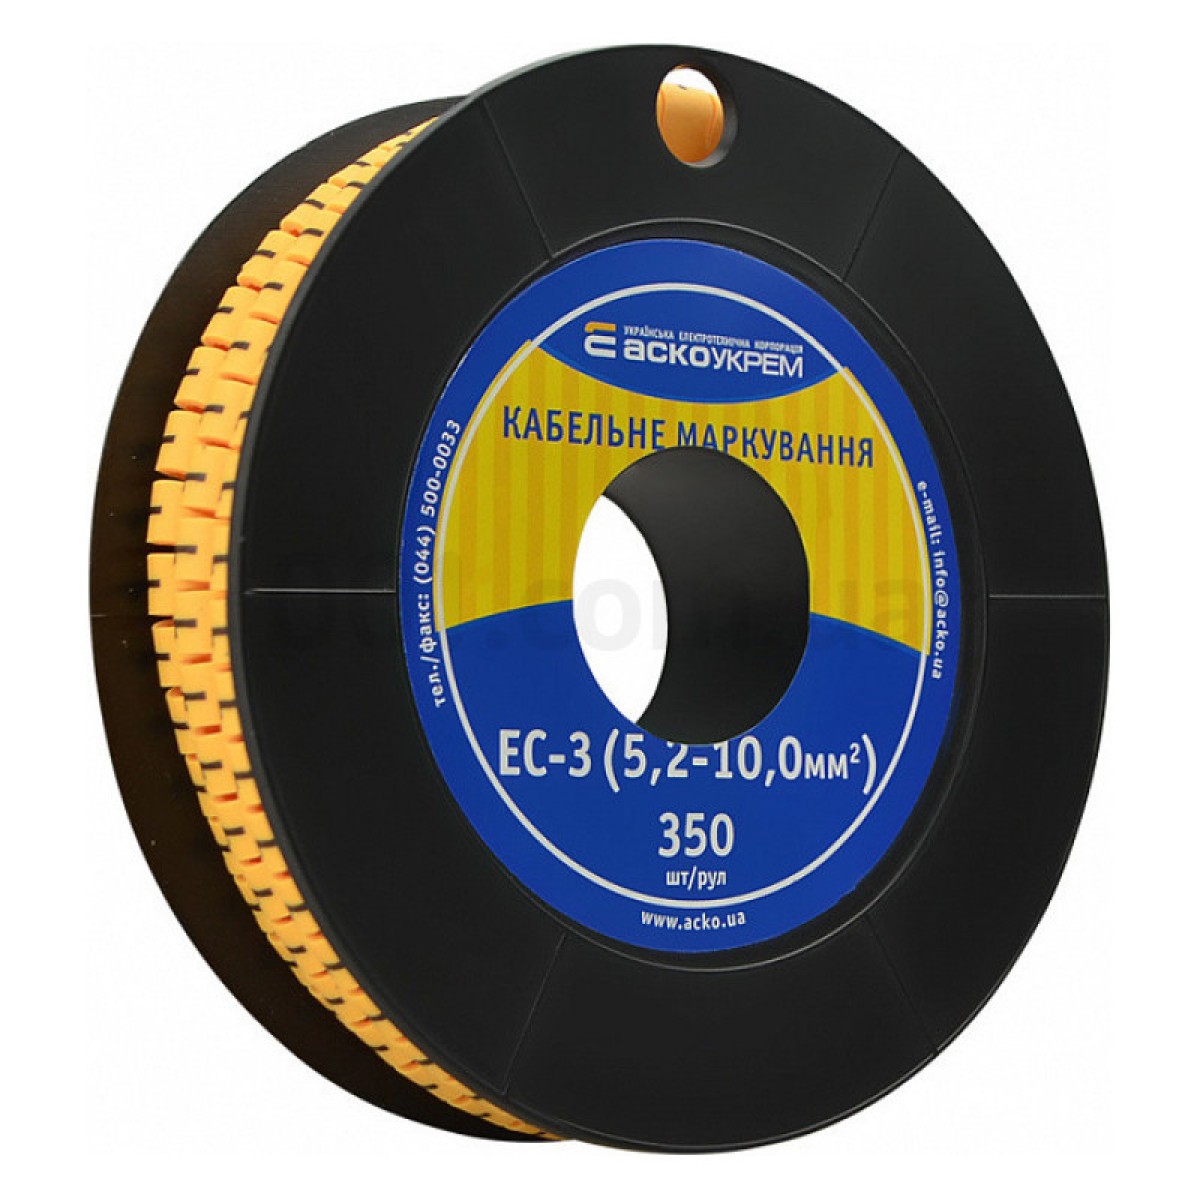 Маркування ЕС-3 для кабелю 5,2-10,0 мм² символ «1» (рулон 250 шт.), АСКО-УКРЕМ 98_98.jpg - фото 1